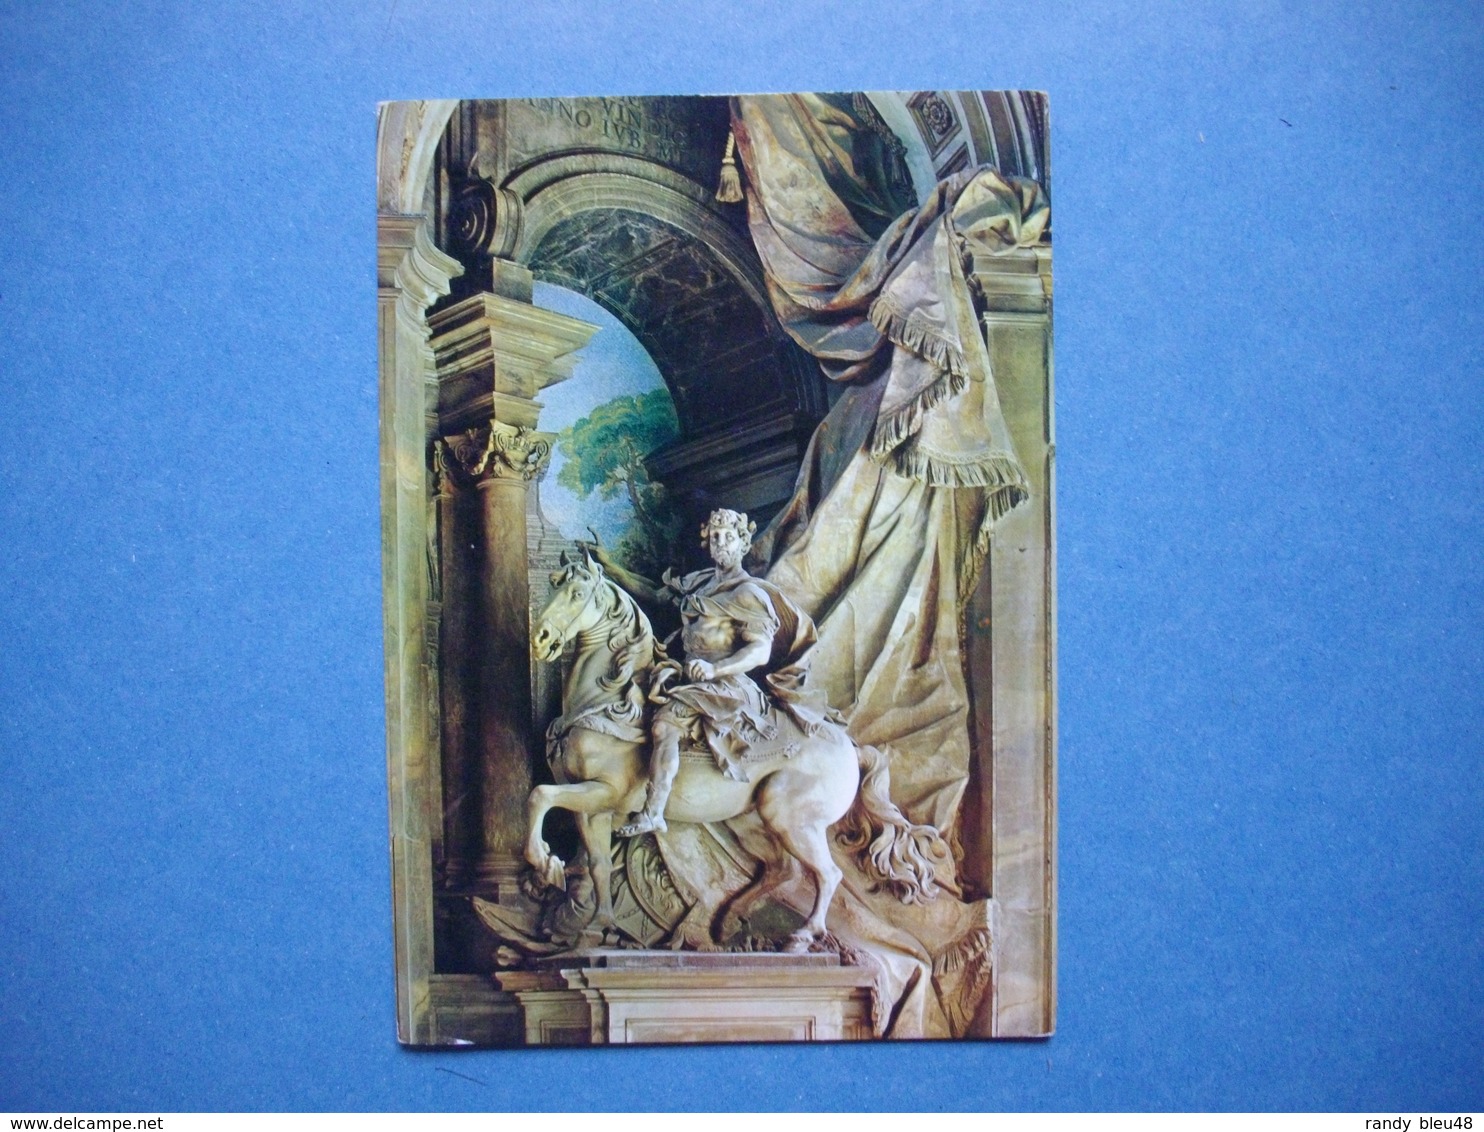 ROMA  -  ROME  -  Citta Del Vaticano  Basilica Di S. Pietro  Vaticani  -  Statue De Charles Magno  -  ITALIA  -  ITALIE - San Pietro